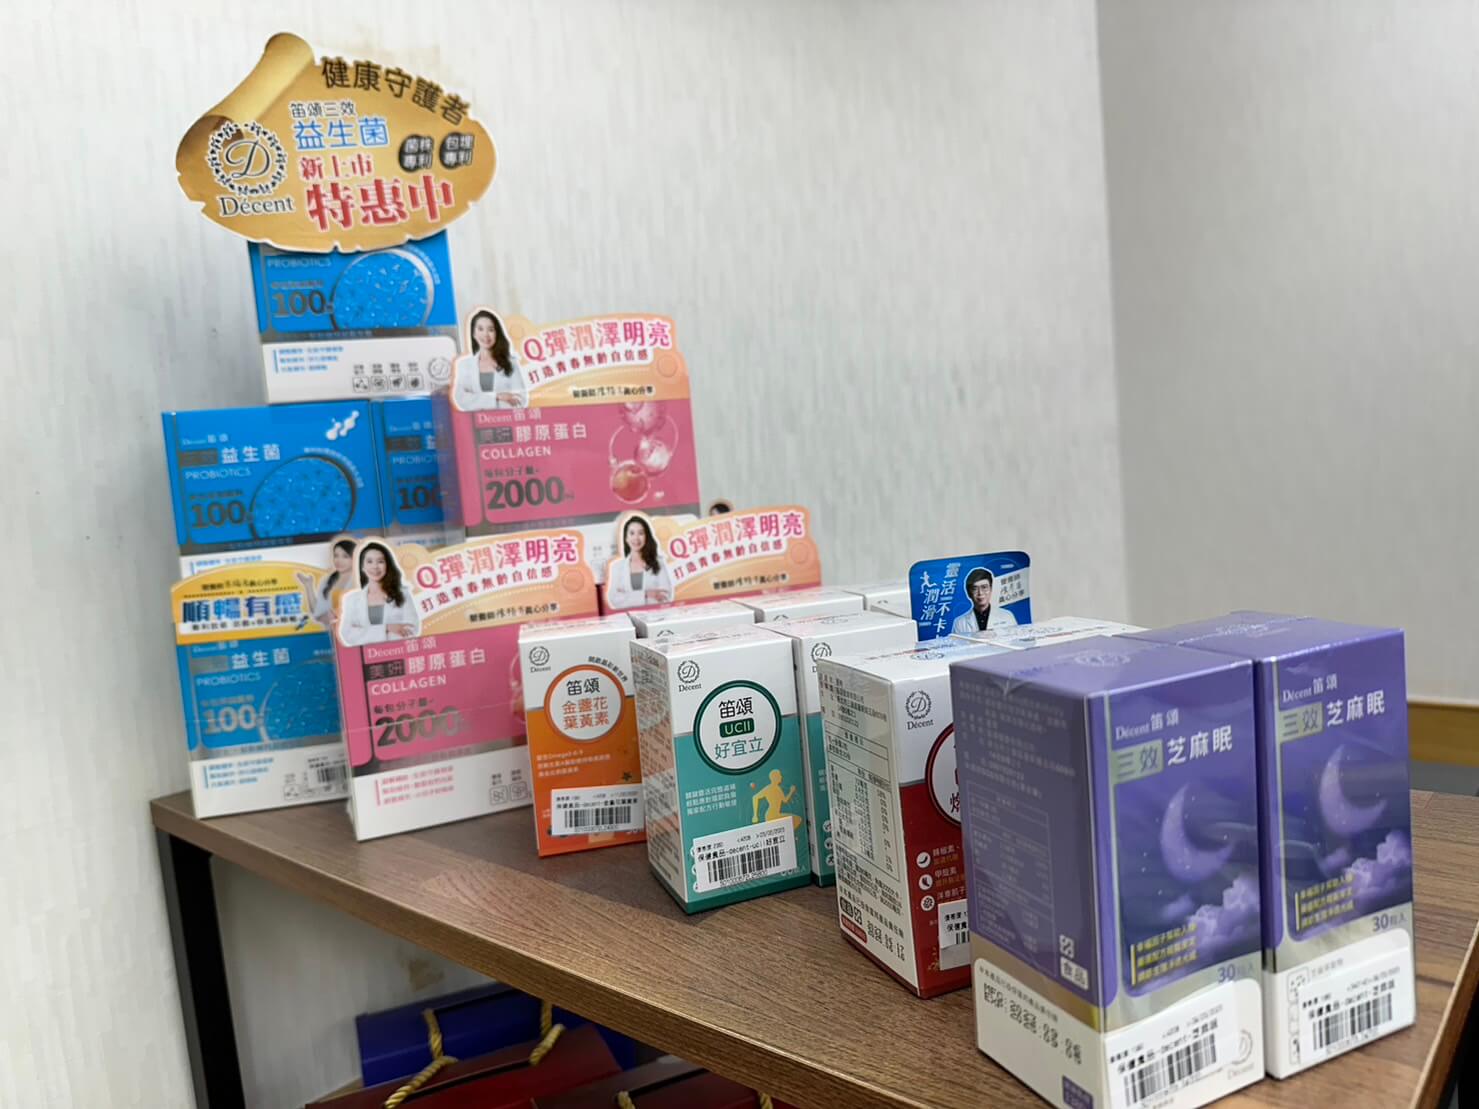 現在更與台灣優質保健食品業者「Décent笛頌」異業合作，只在門市獨家販售！